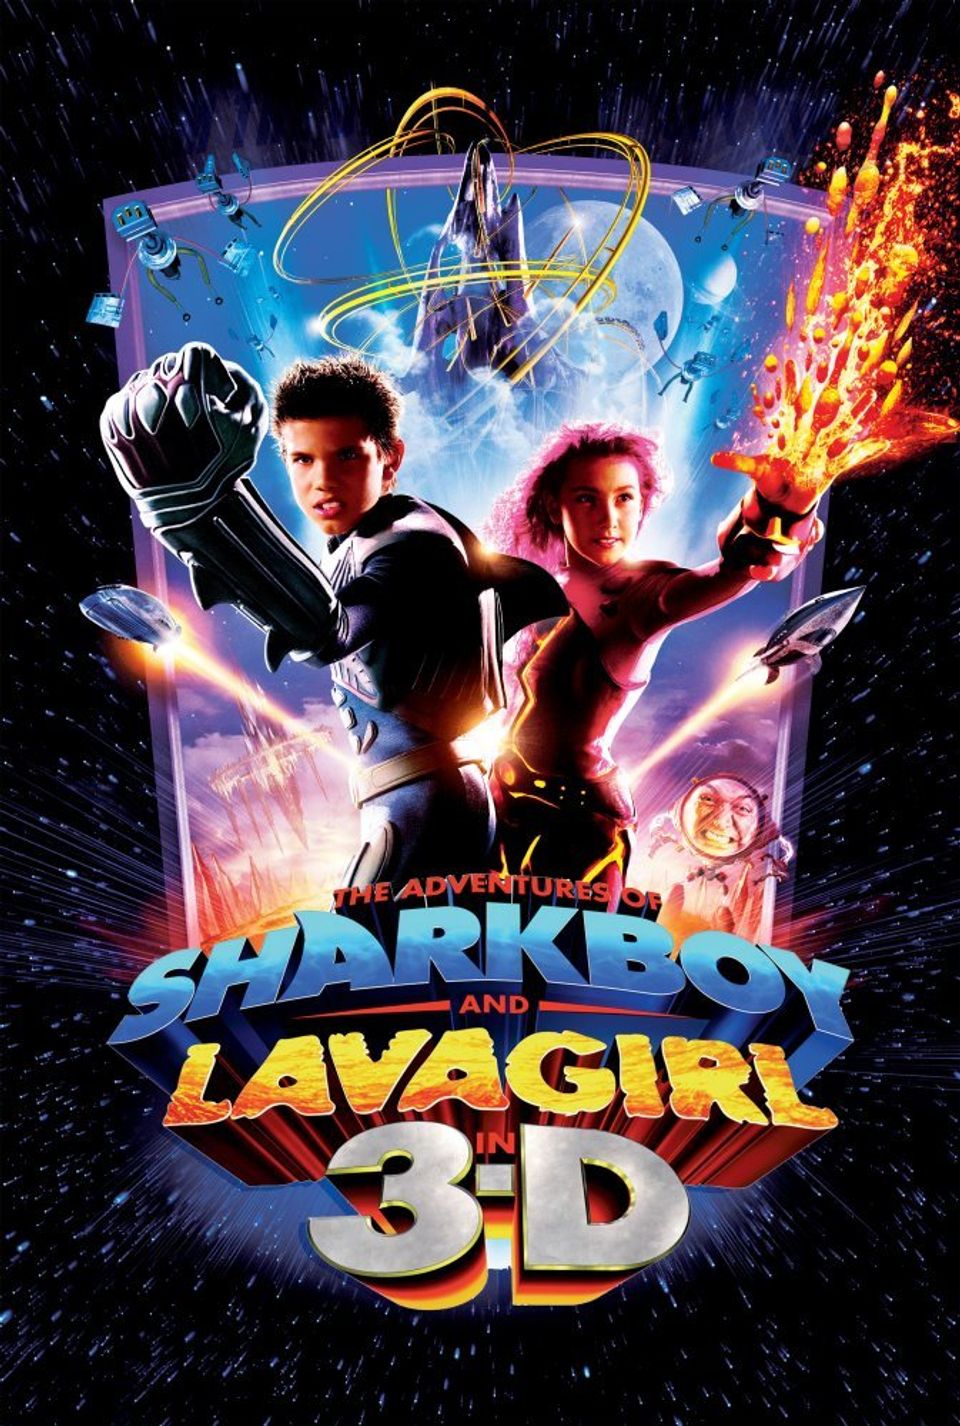 ภาพยนตร์ฝรั่ง “อิทธิฤทธิ์ไอ้หนูชาร์กบอยกับสาวน้อยพลังลาวา” (THE ADVENTURES OF SHARKBOY AND LAVAGIRL)